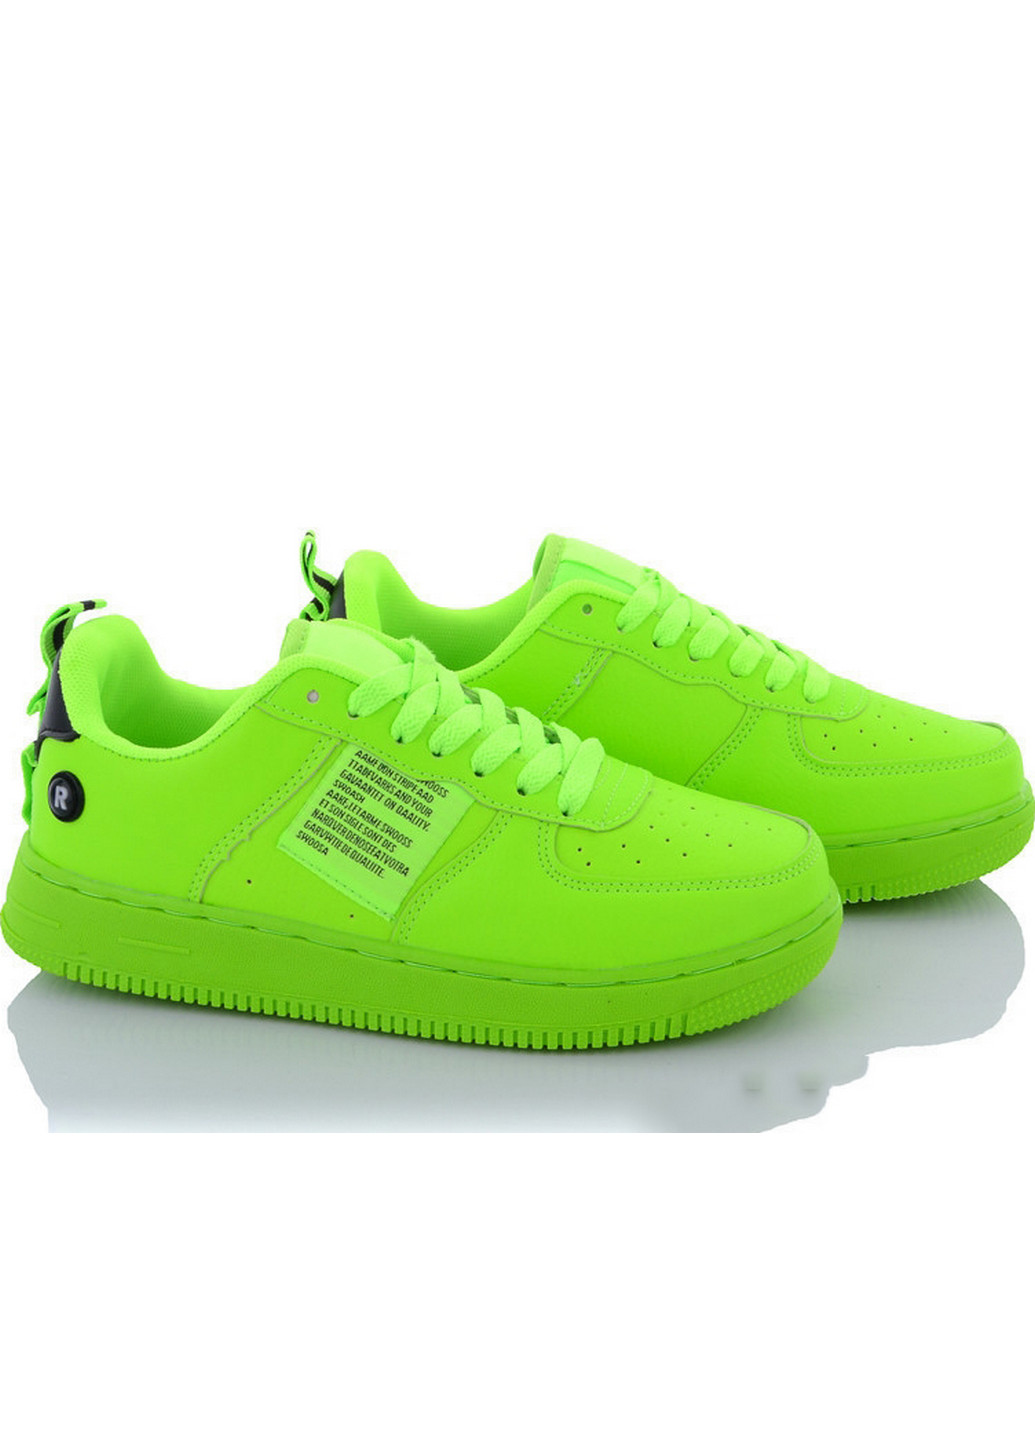 Зелені всесезонні кроссовки b21201-7 41 зеленый Navigator